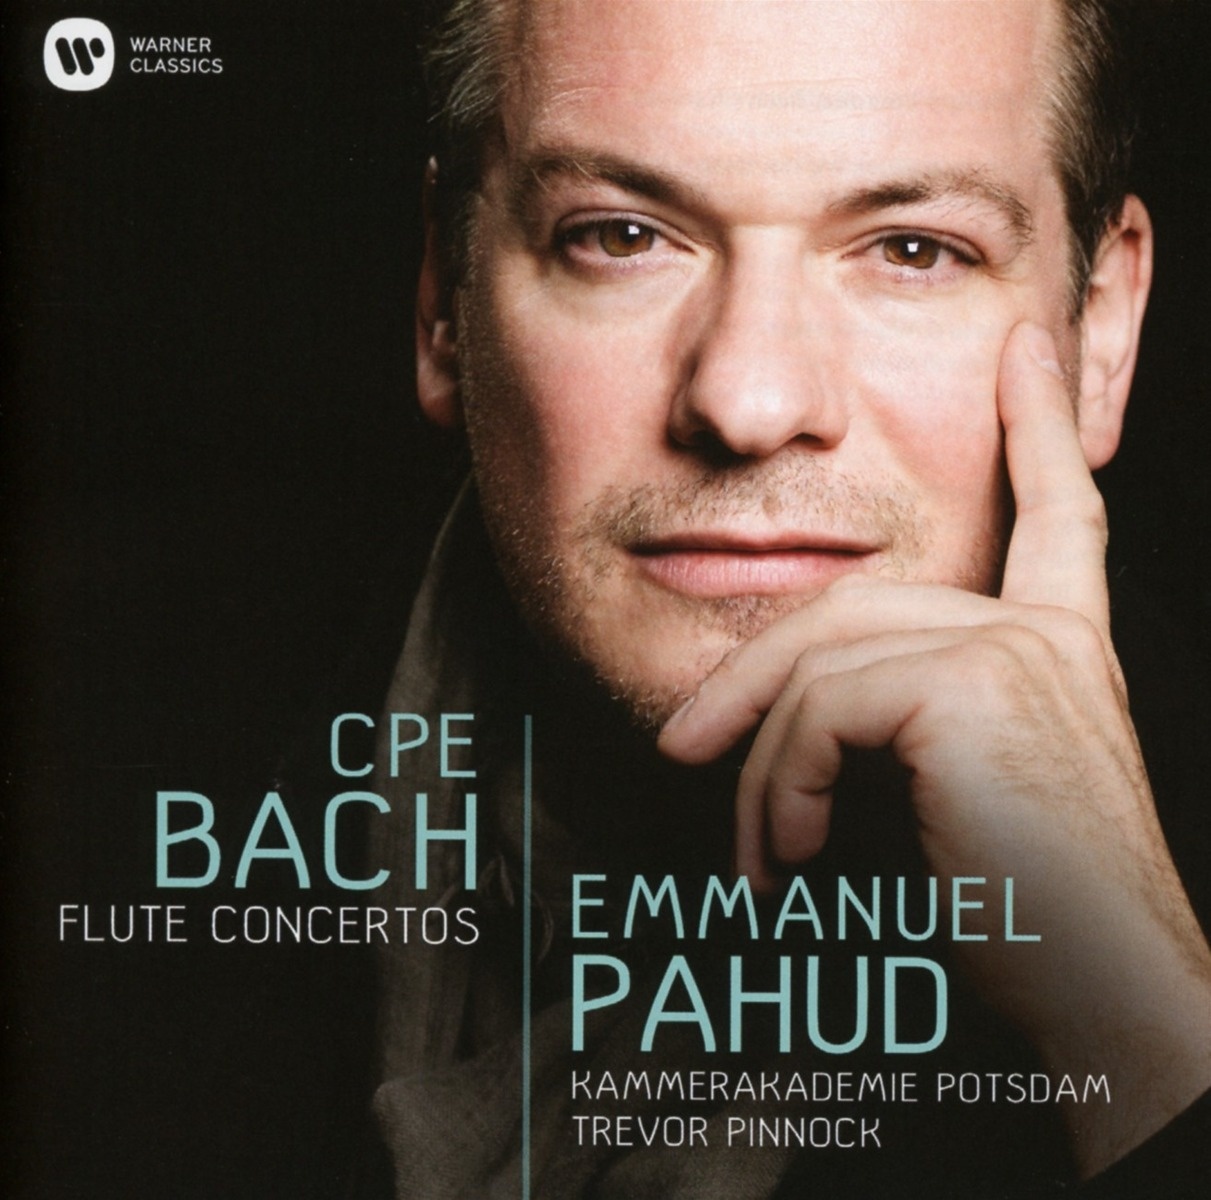 Flötenkonzerte - Emmanuel Pahud  Trevor Pinnock. (CD)